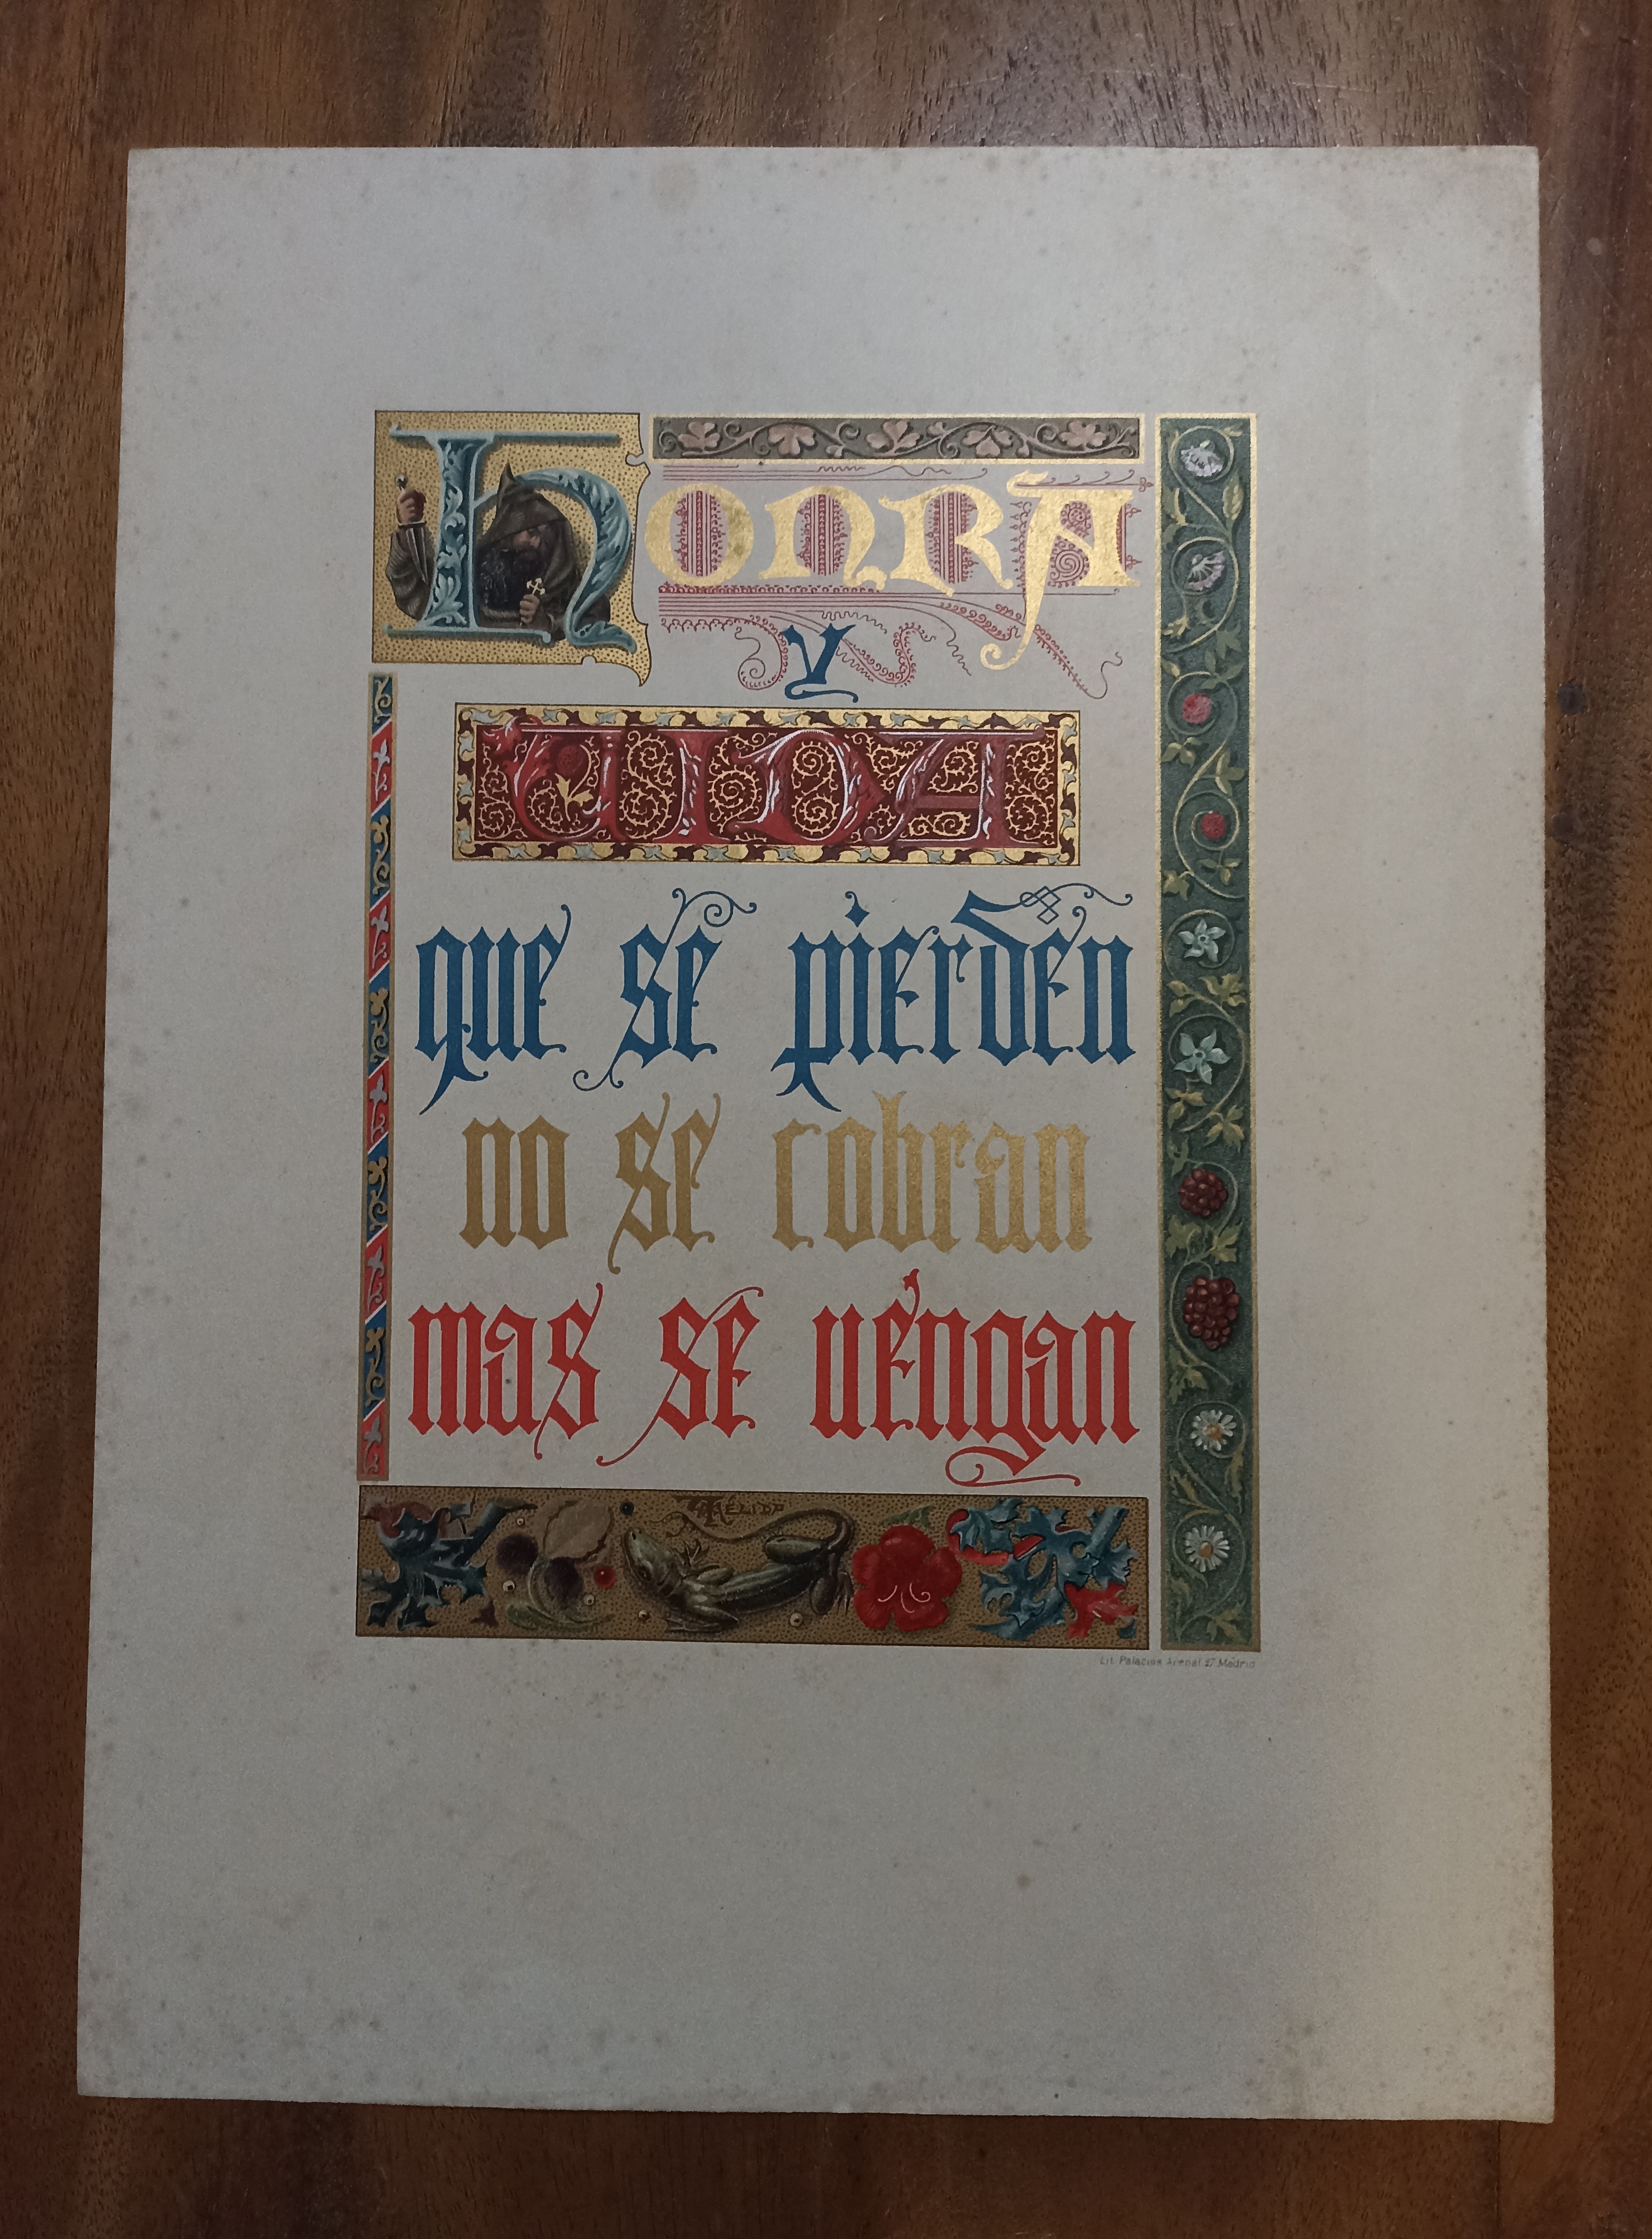 Lámina (30x41 cms.) Honra y Vida no se pierden no se cobran más se vengan (1900)